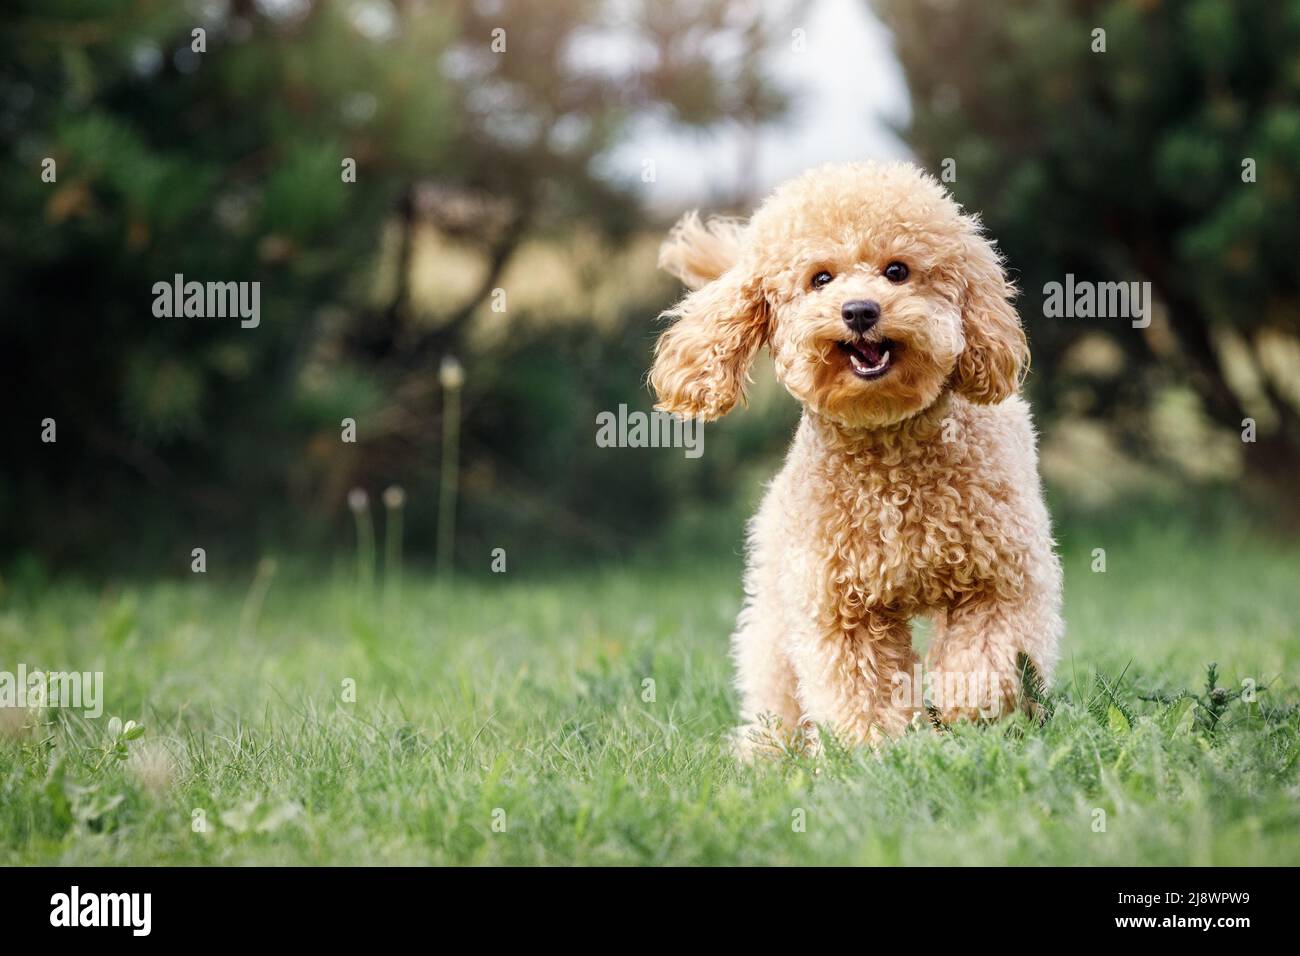 Ein lächelnder kleiner Welpe eines hellbraunen Pudels auf einer schönen grünen Wiese läuft glücklich auf die Kamera zu. Netter Hund und guter Freund. Freier Speicherplatz Stockfoto